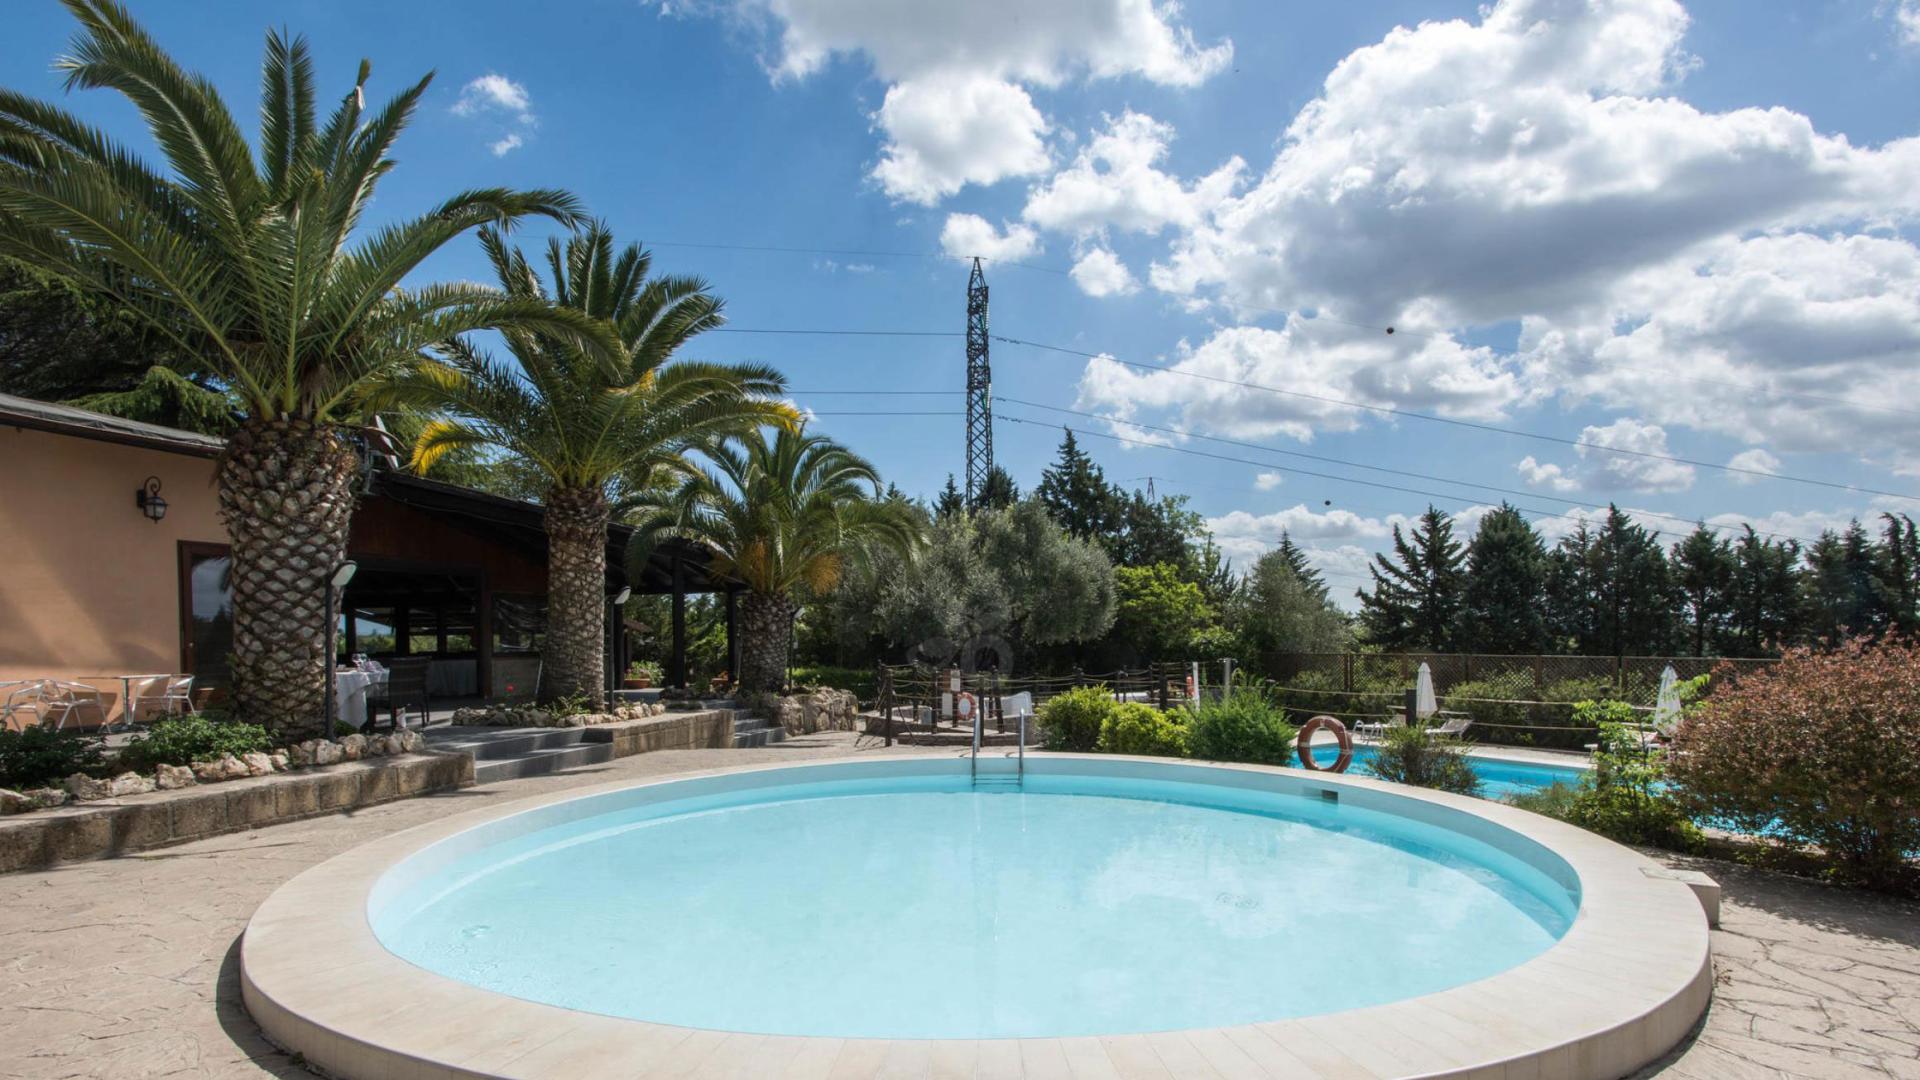 Runder Pool mit Palmen, Außensitzplätzen und schönem Himmel.